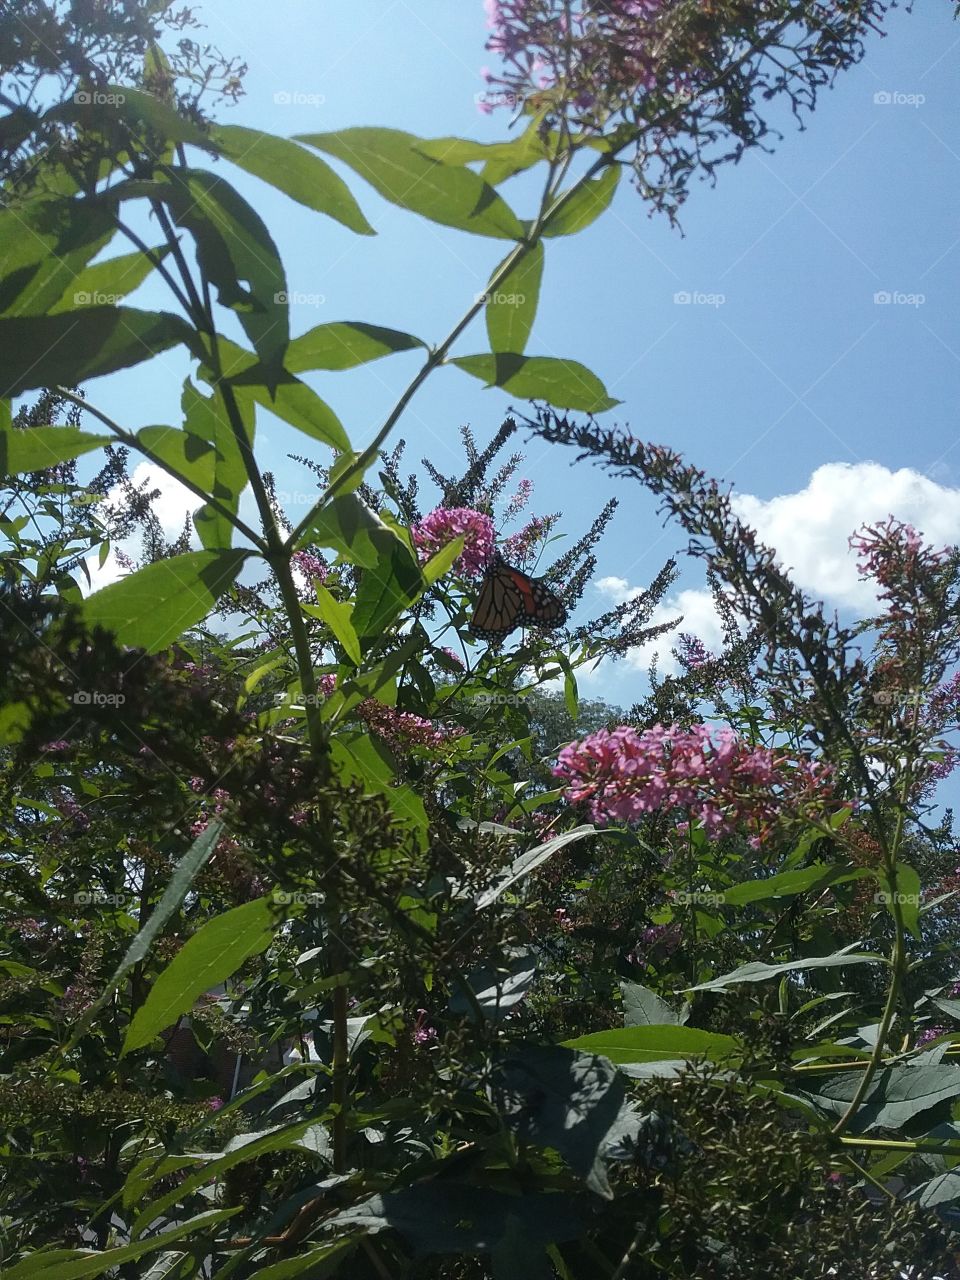 Butterfly on Bush in the sky